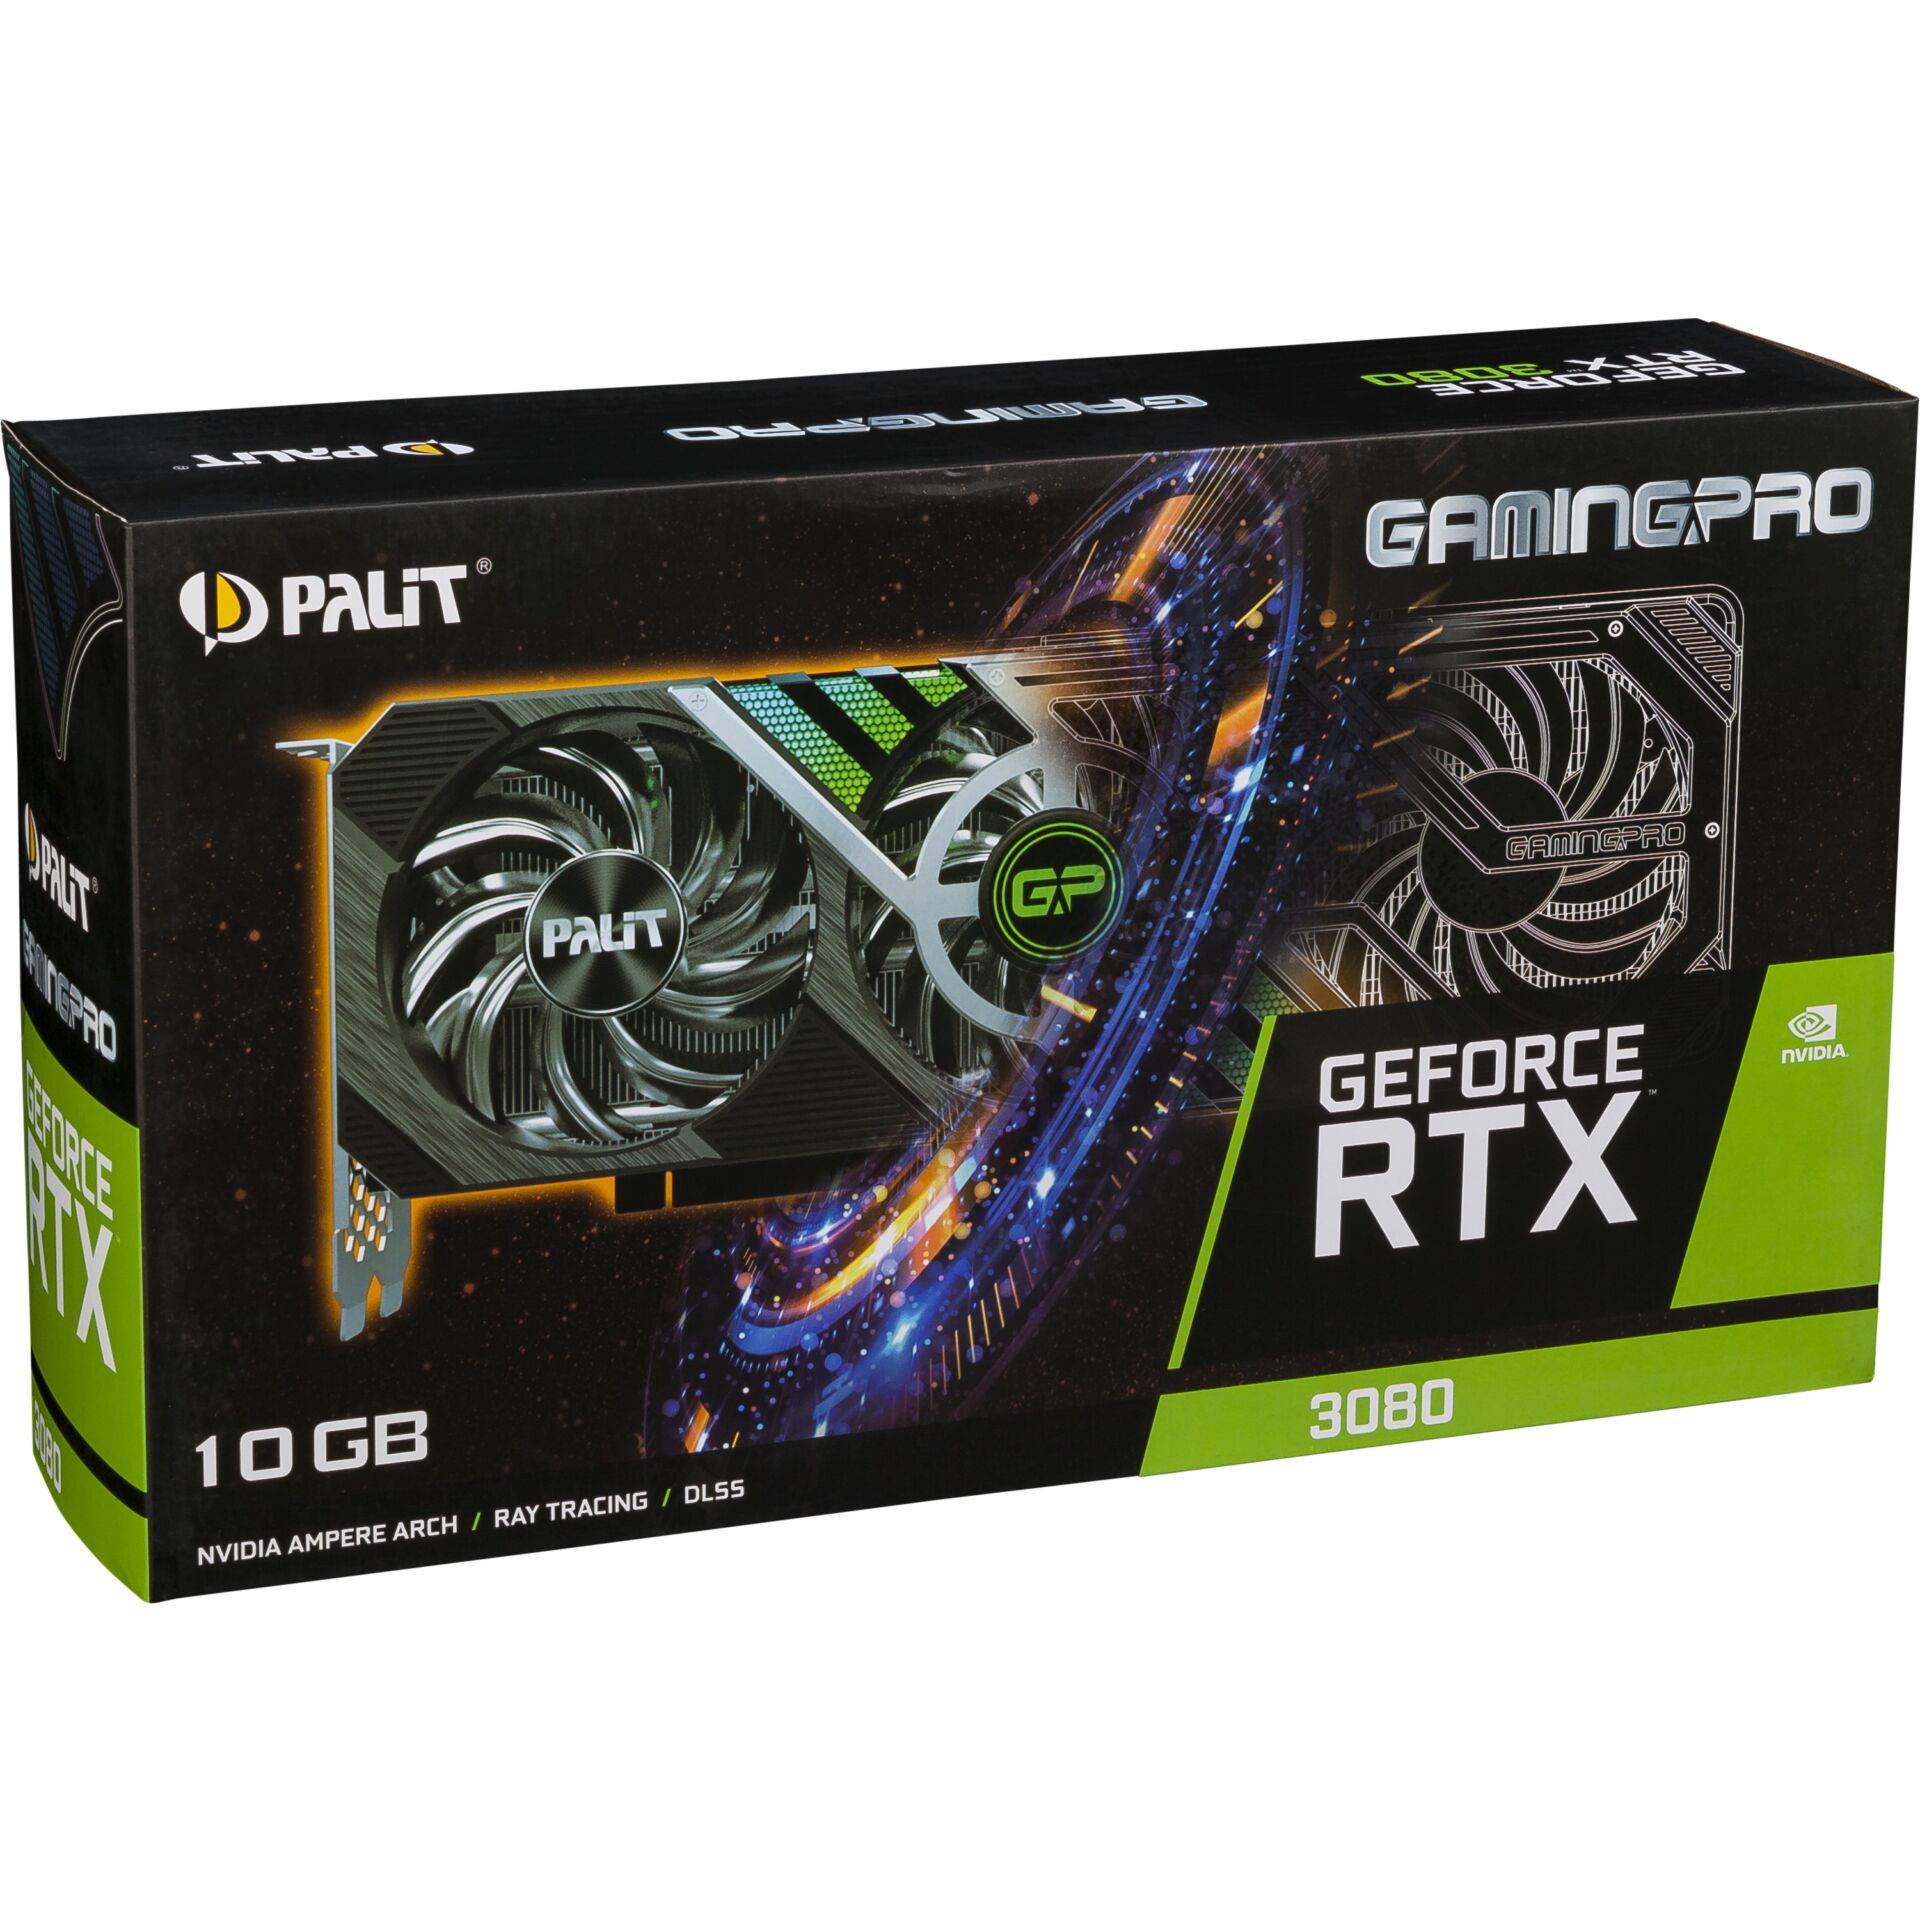 PALiT GAMINGPRO GeForce RTX 3080 non LHR